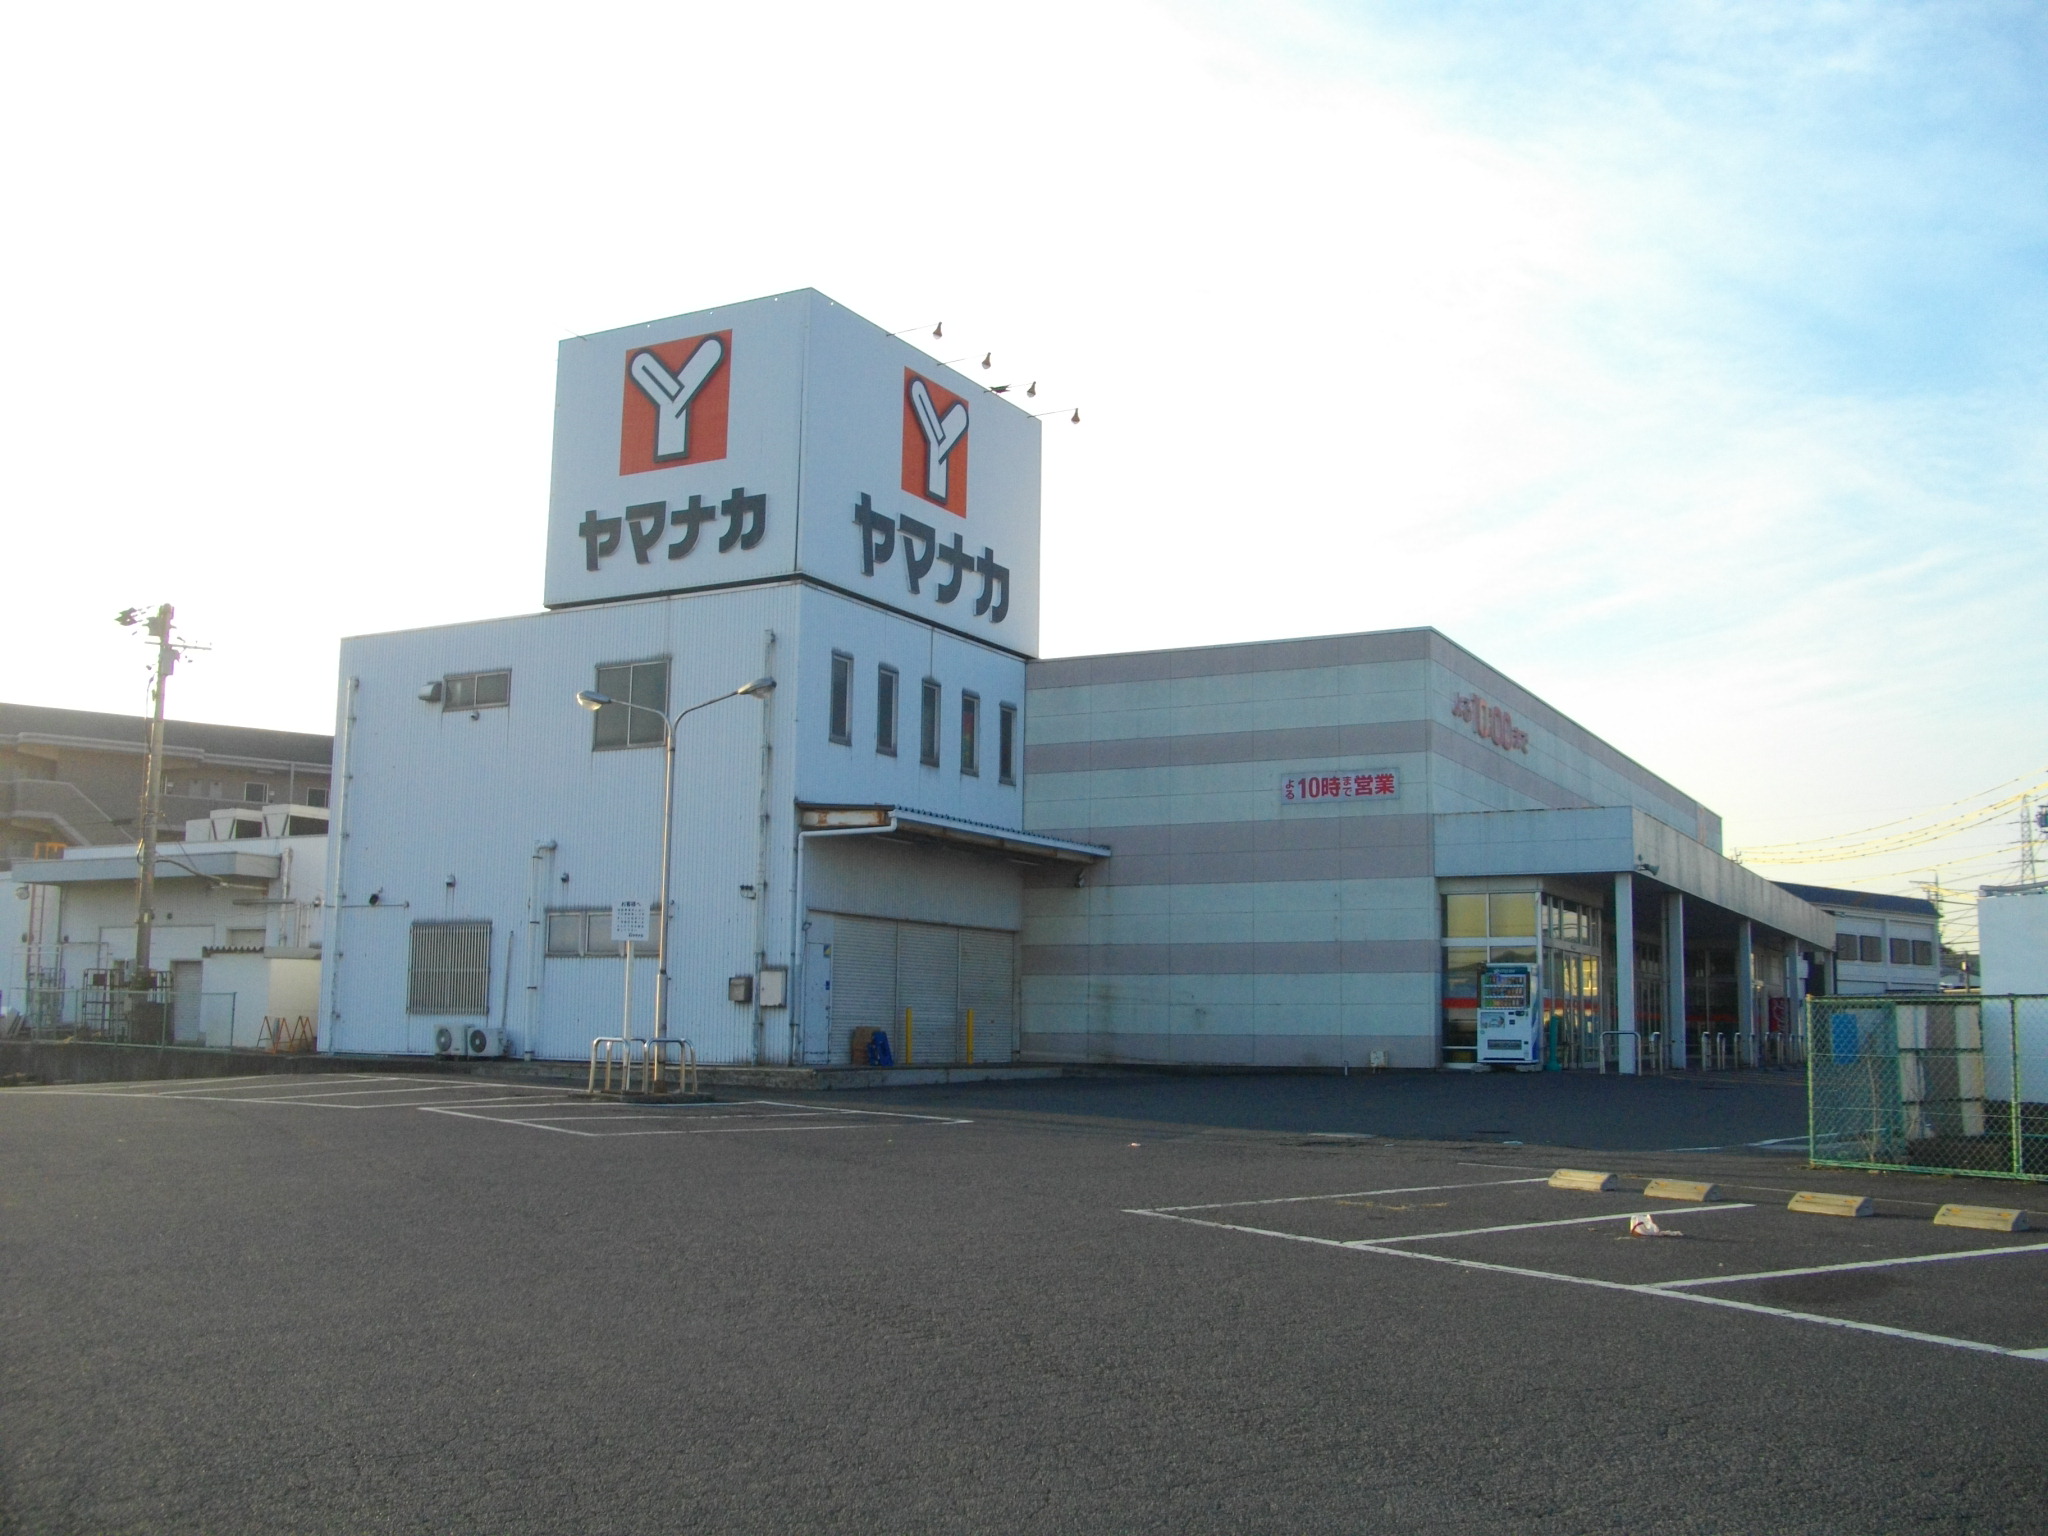 Supermarket. Yamanaka Tamagaki store up to (super) 1061m